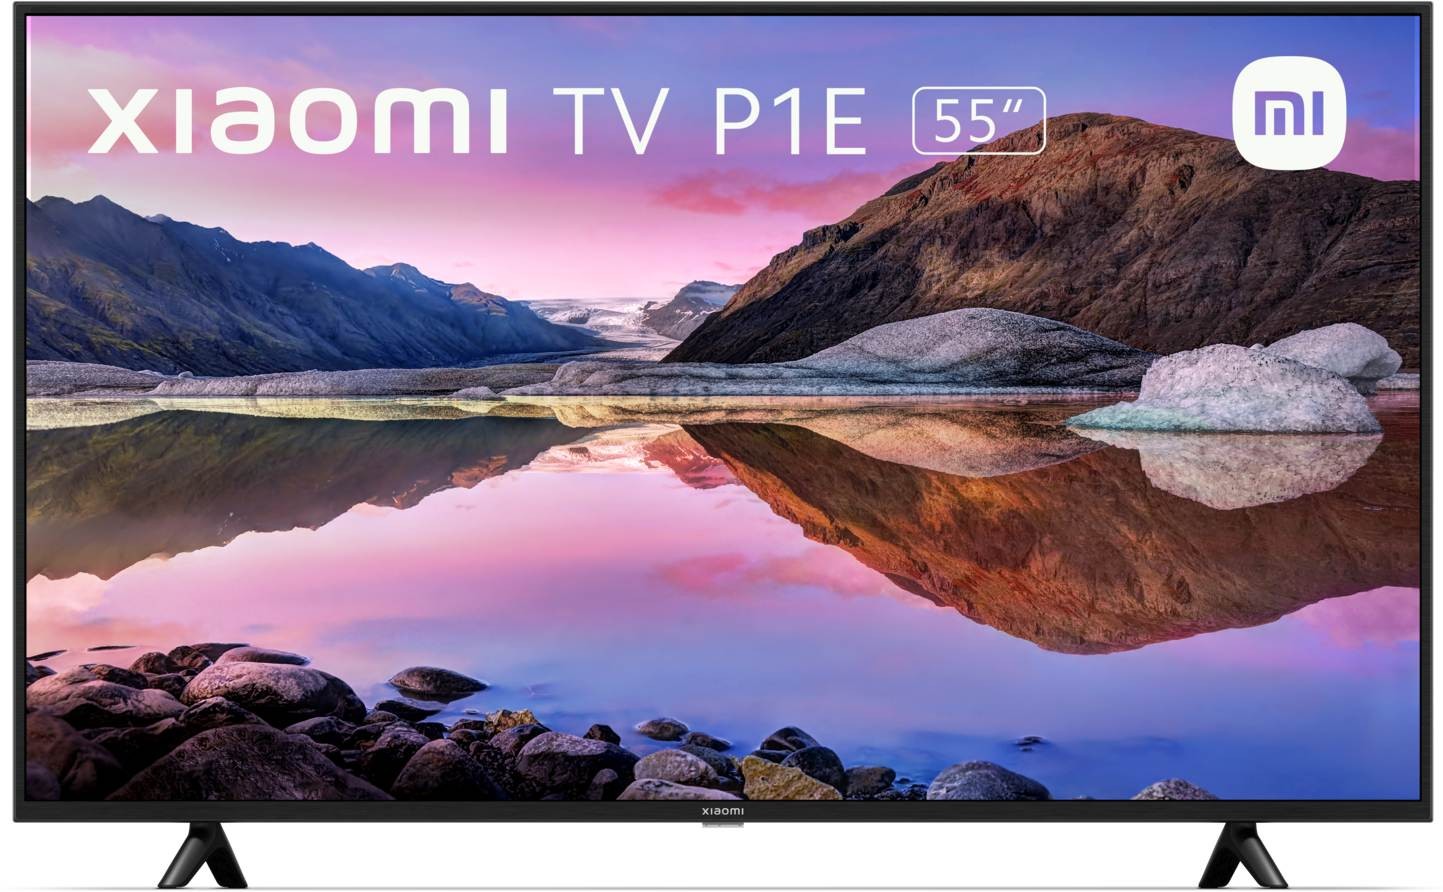 XIAOMI TV LED 4K 139 cm 55" - 55P1E4K